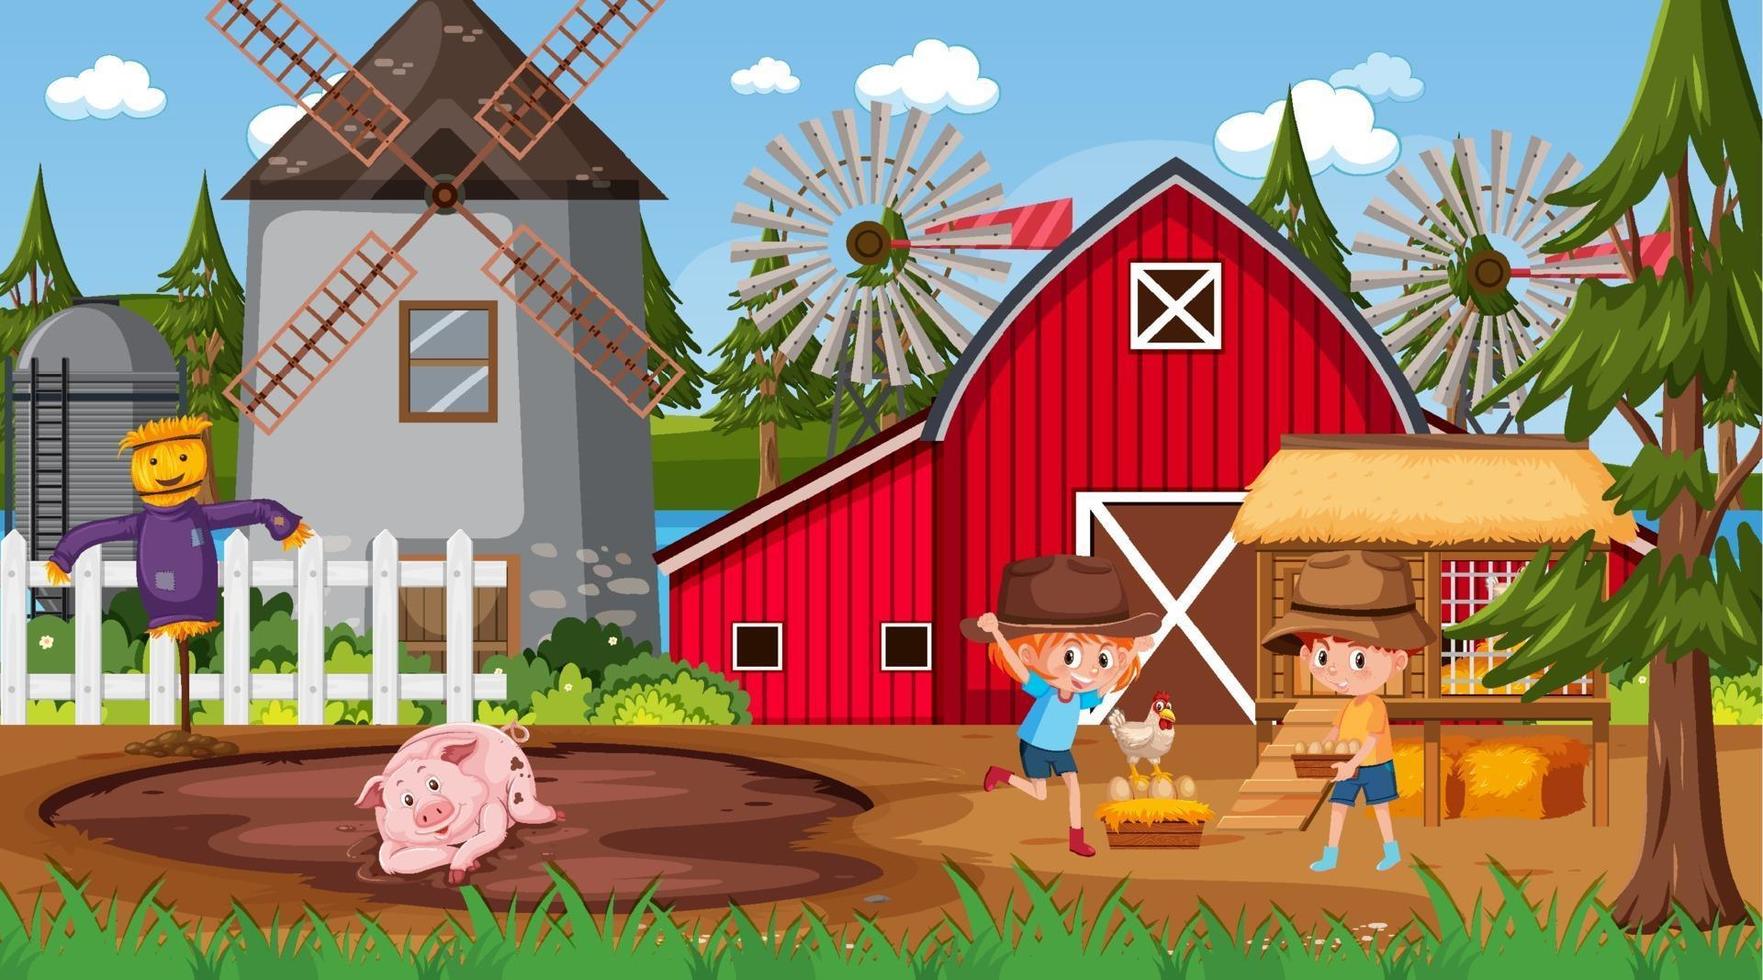 scena della fattoria con molti personaggi dei cartoni animati per bambini e animali da fattoria vettore